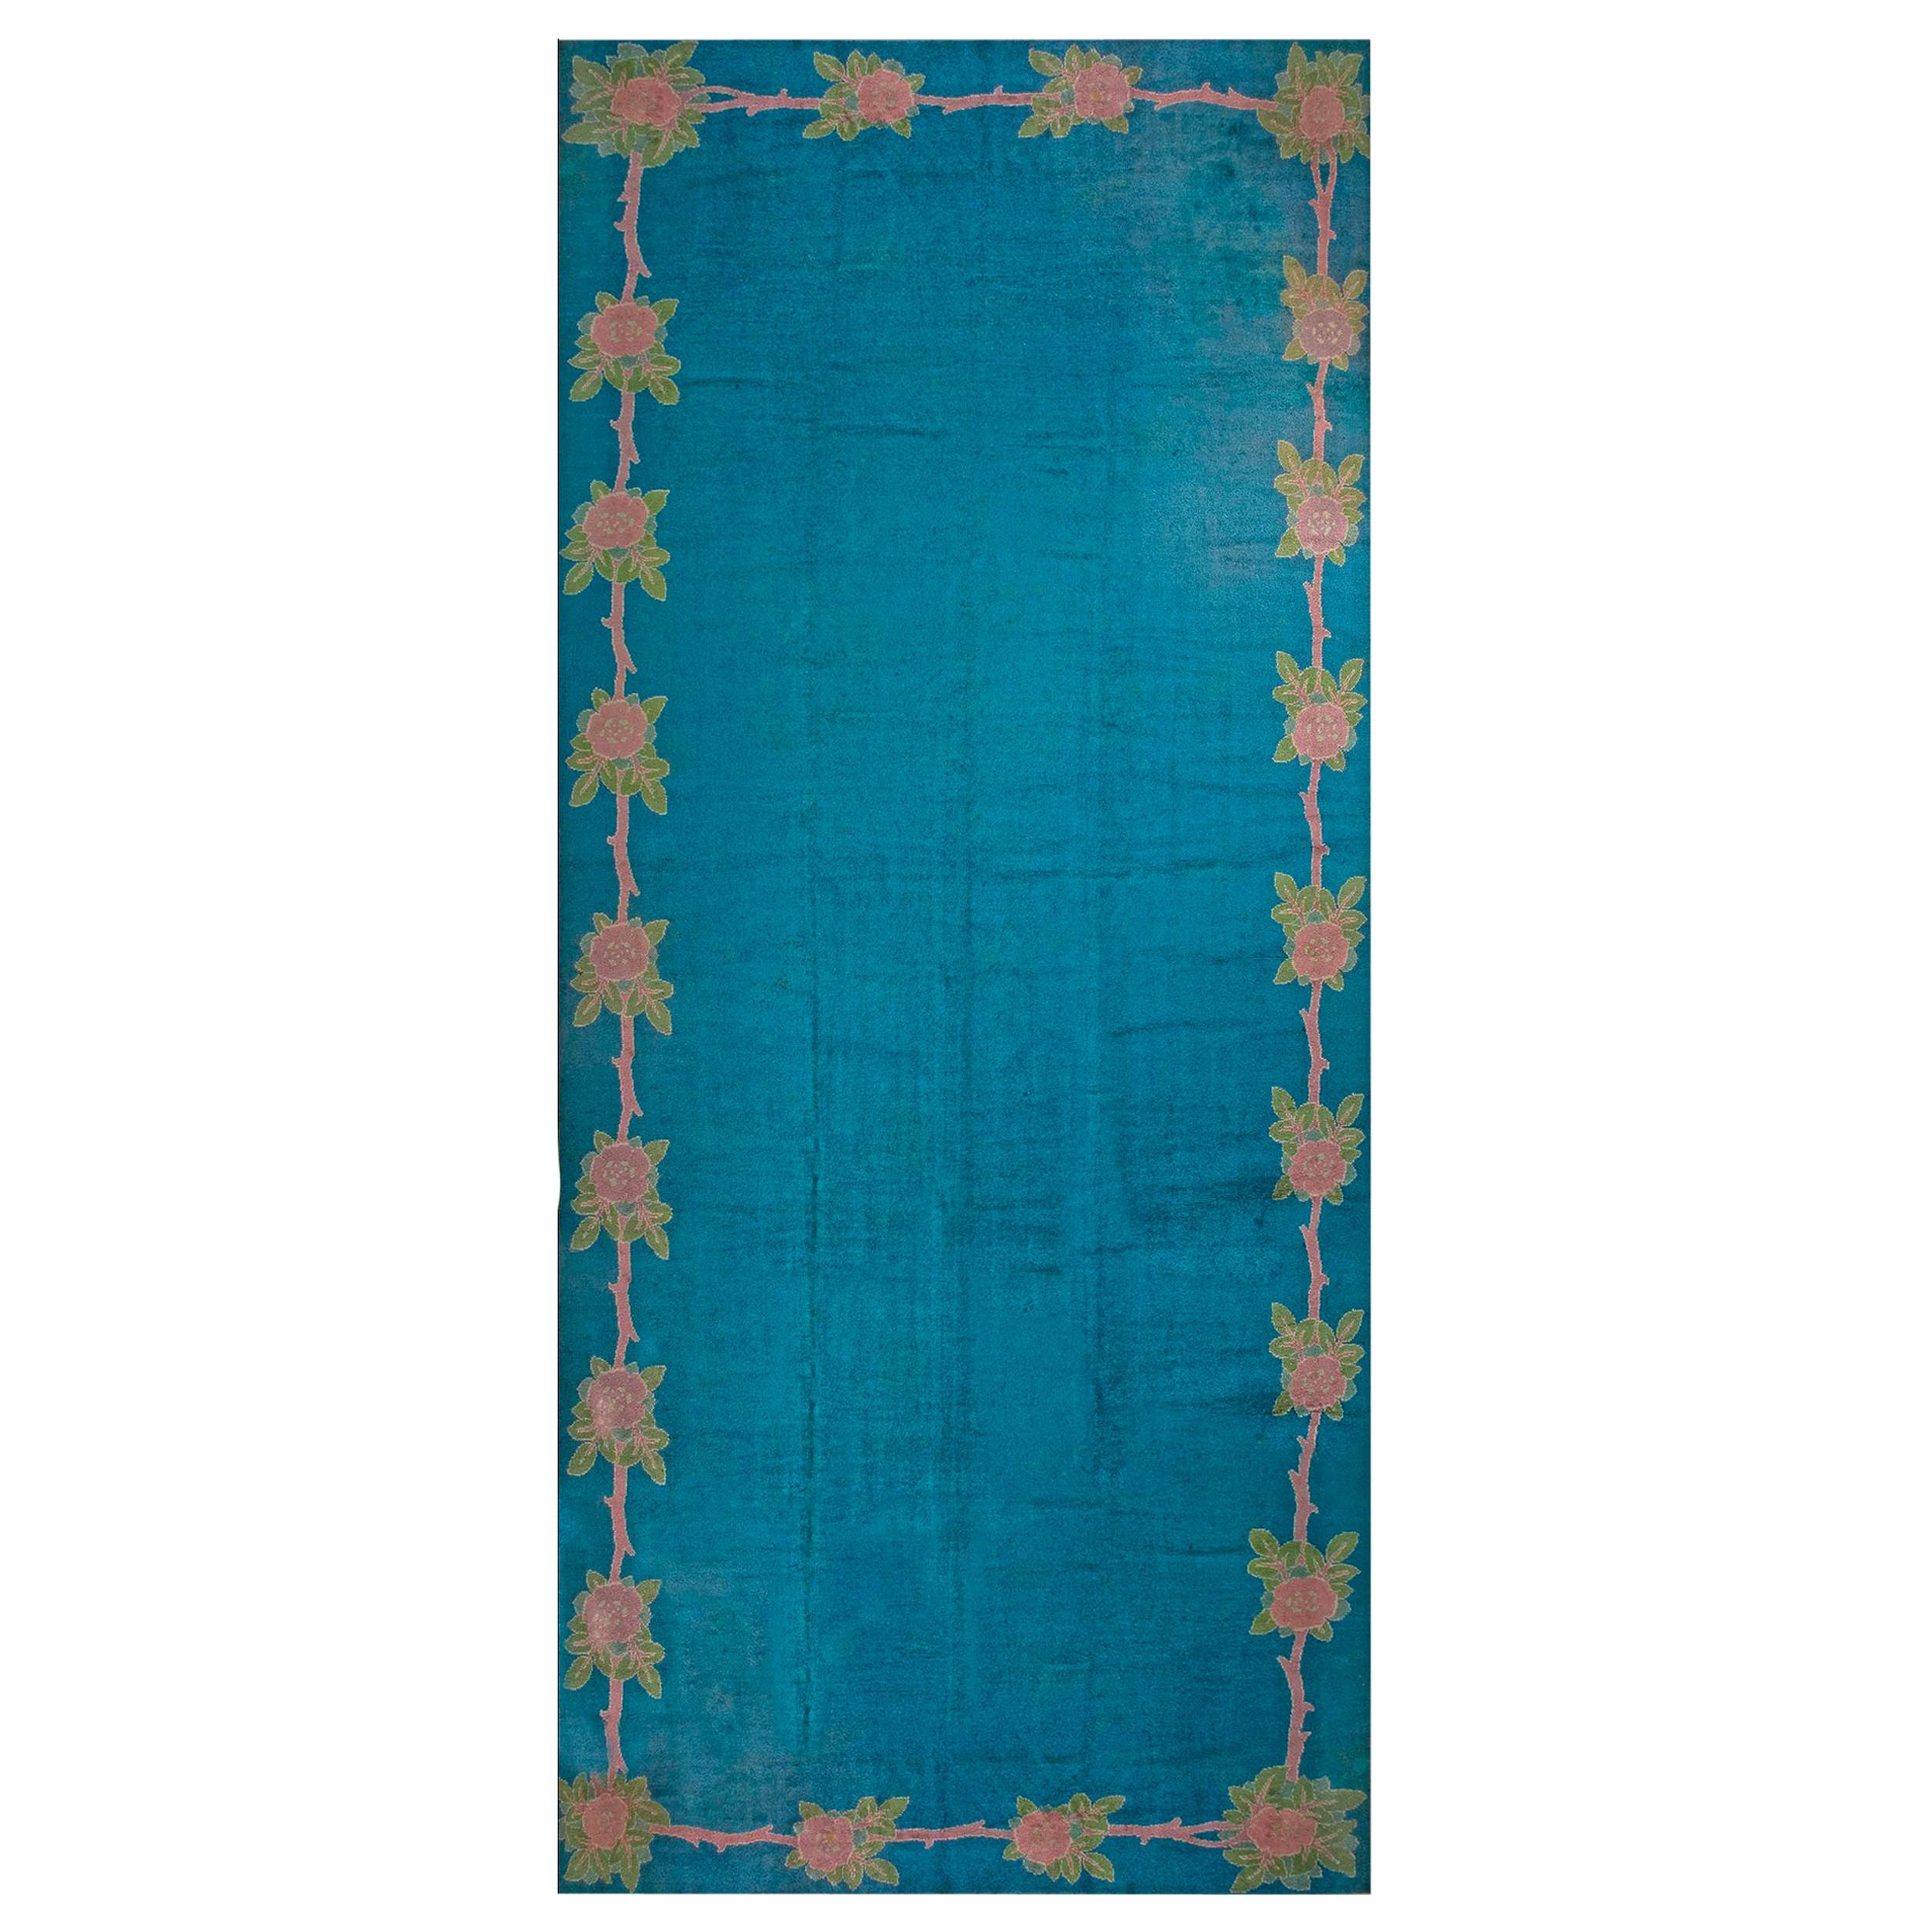 Irischer Donegal Arts & Crafts-Teppich des frühen 20. Jahrhunderts (12'6 Zoll x 25'2 Zoll)-381 x 767)